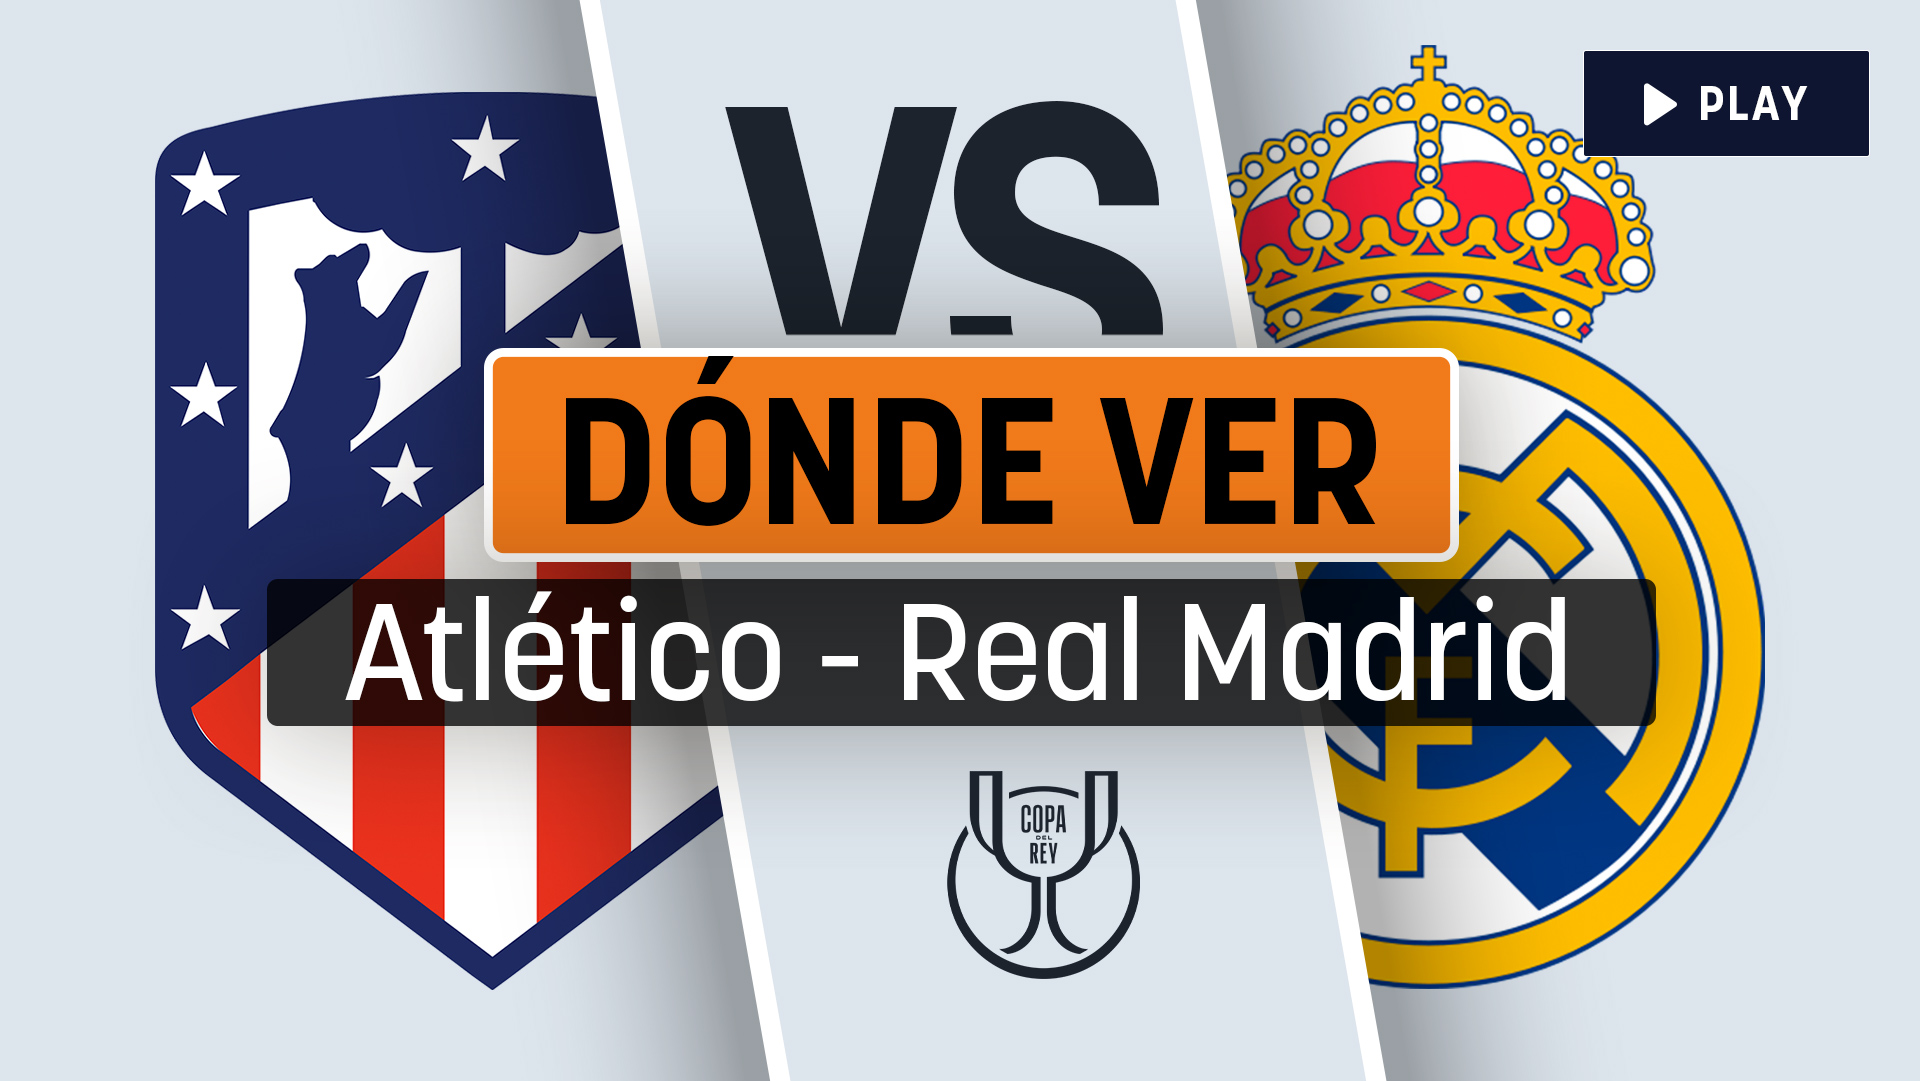 Atlético de Madrid vs Real Madrid ver partido gratis y en directo online  Copa del Rey : EN VIVO